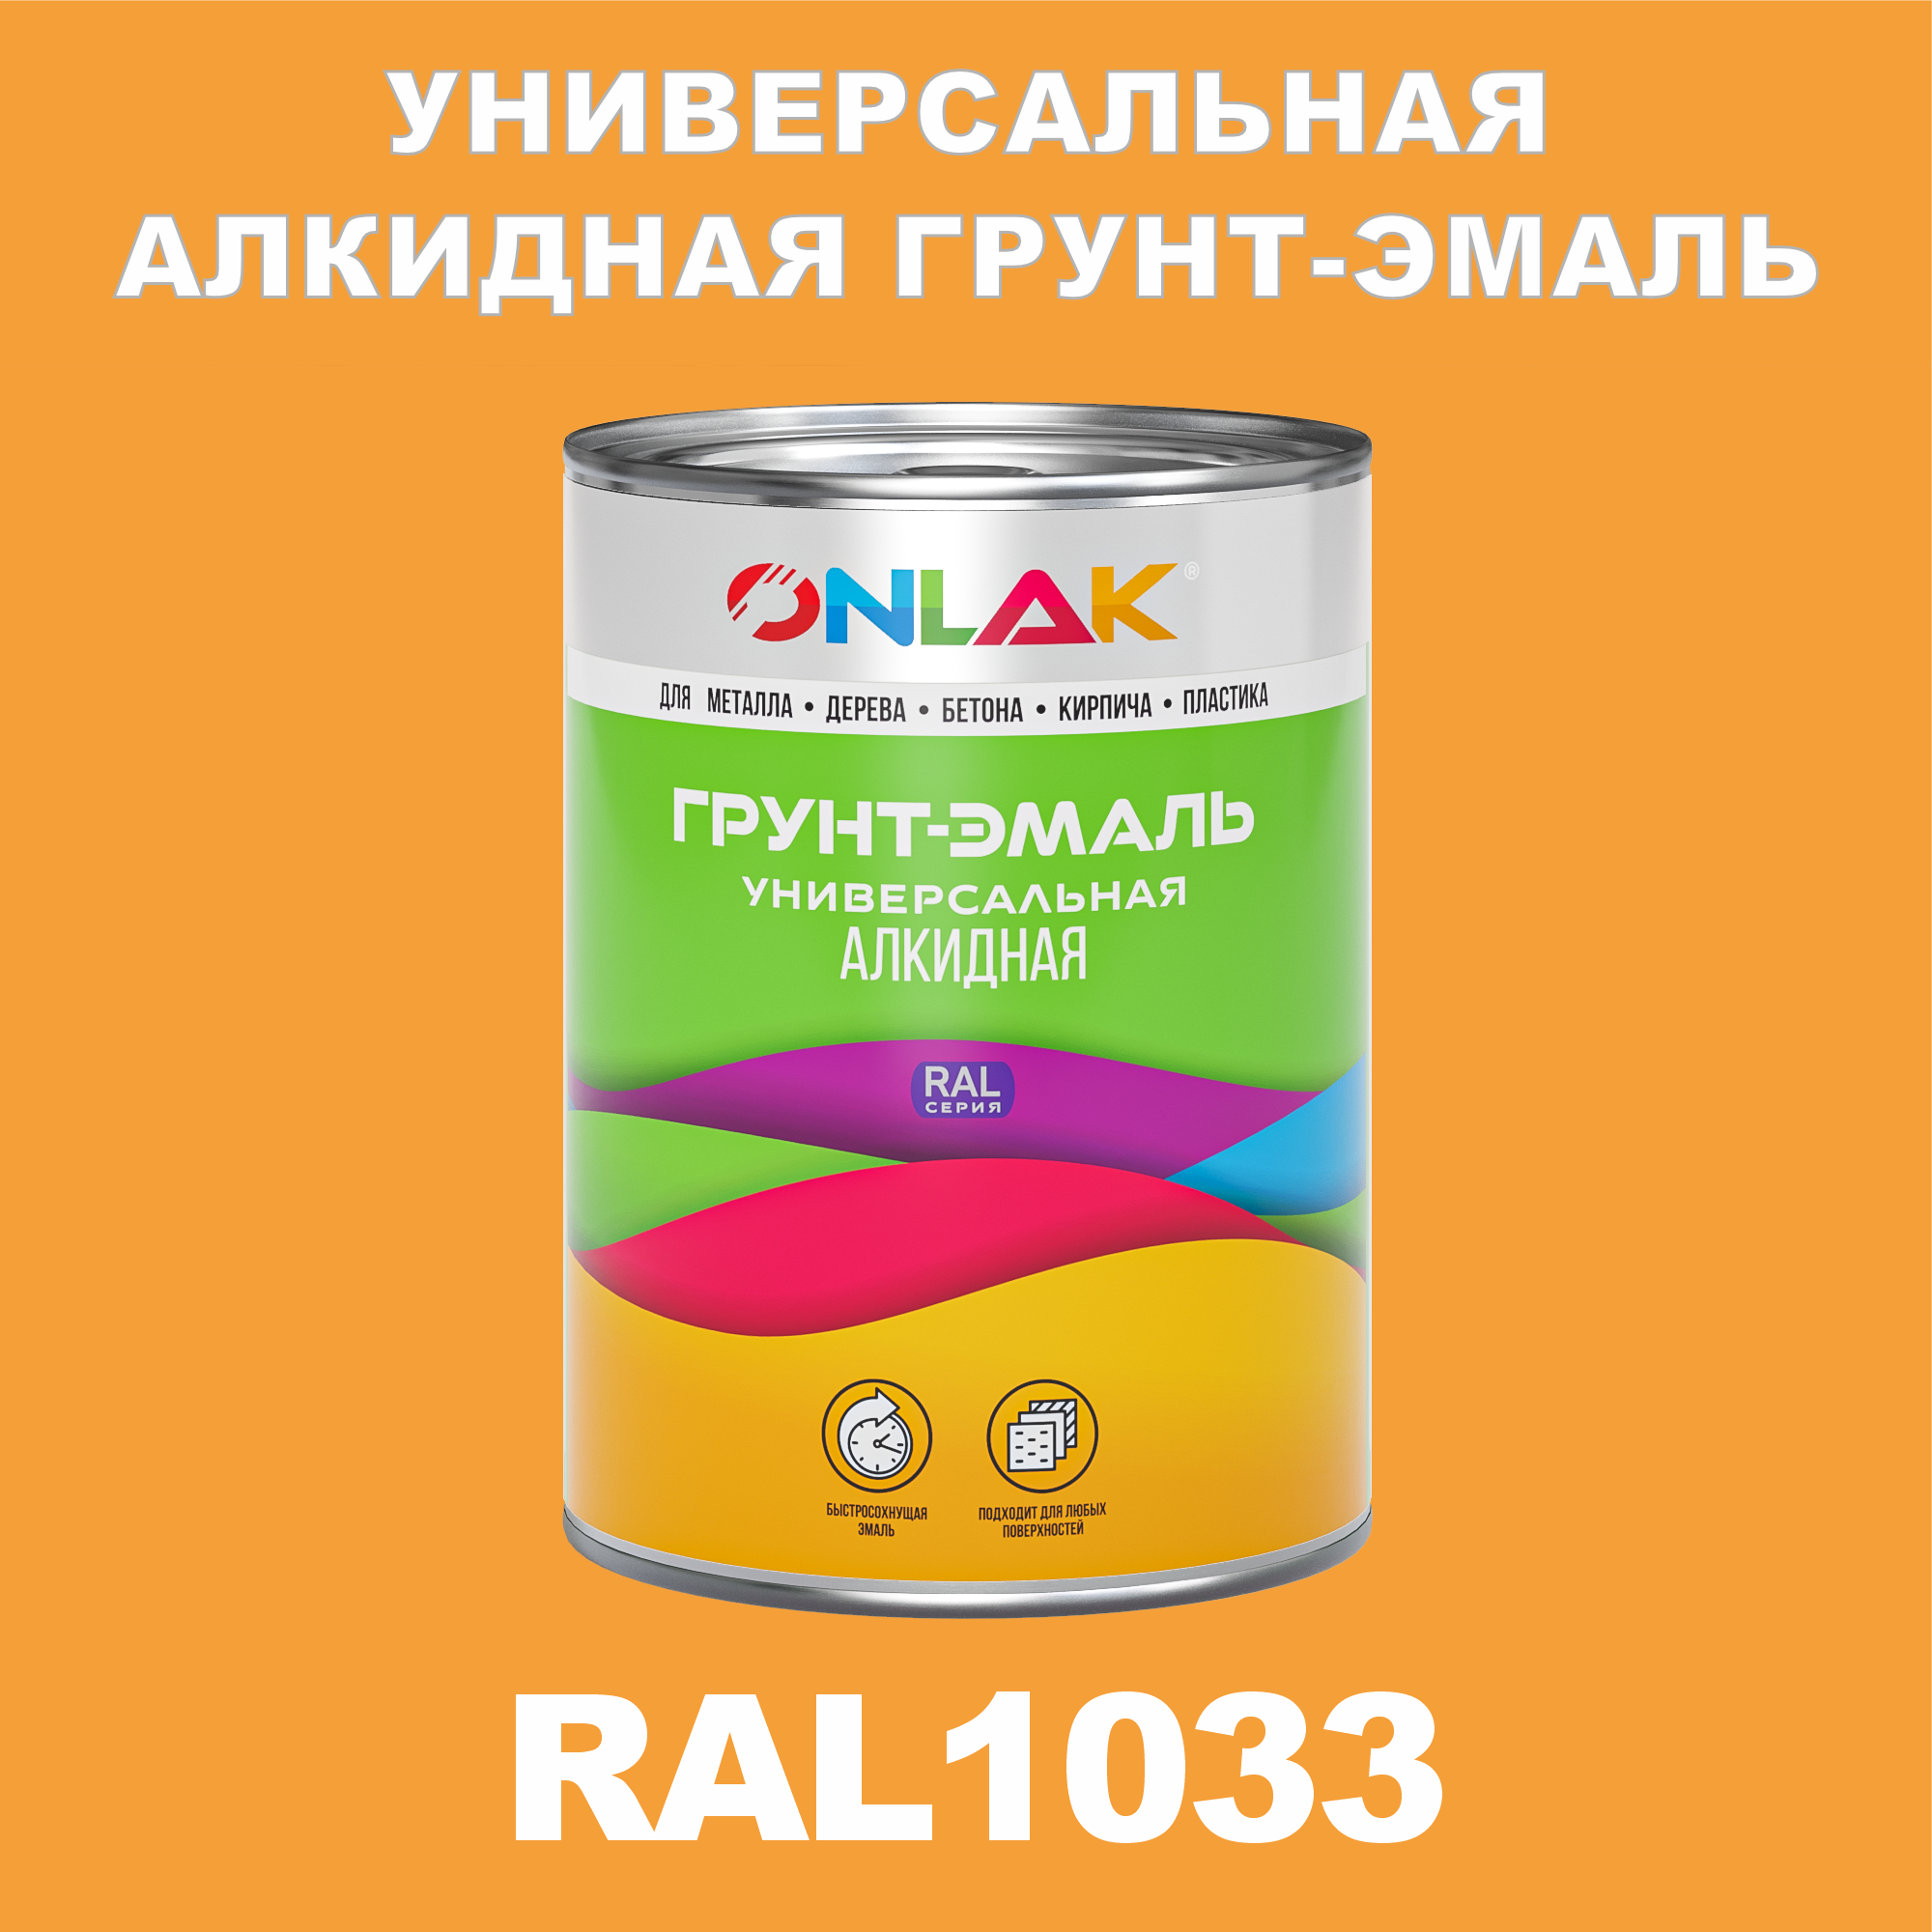 Грунт-эмаль ONLAK 1К RAL1033 антикоррозионная алкидная по металлу по ржавчине 1 кг